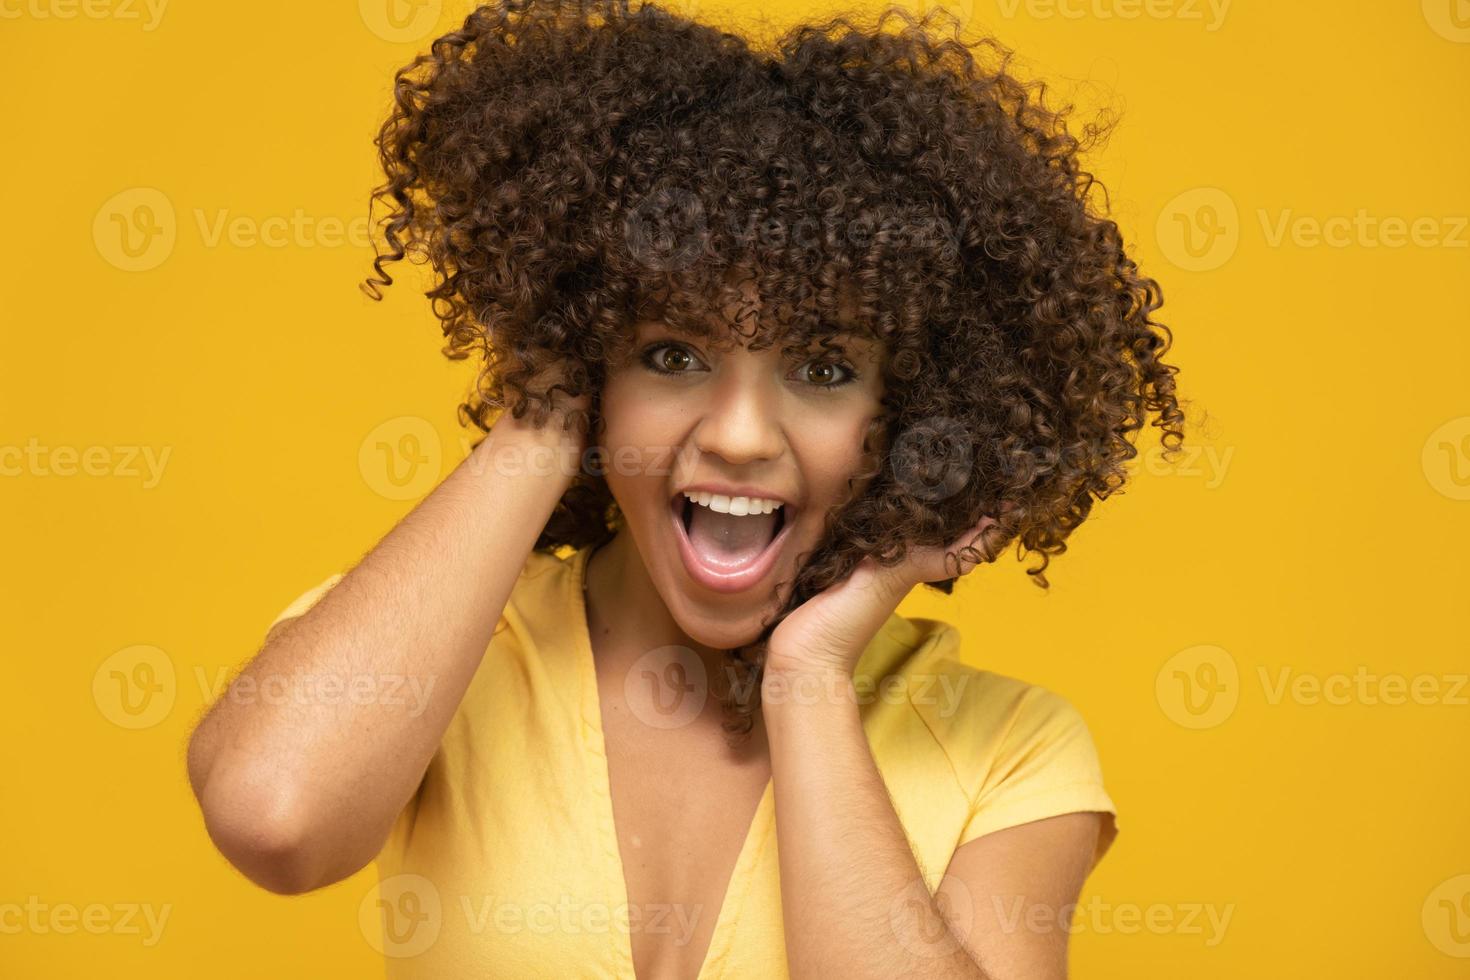 feliz risa mujer africana americana con su pelo rizado sobre fondo amarillo. mujer rizada riendo en suéter tocando su cabello y mirando a la cámara. foto